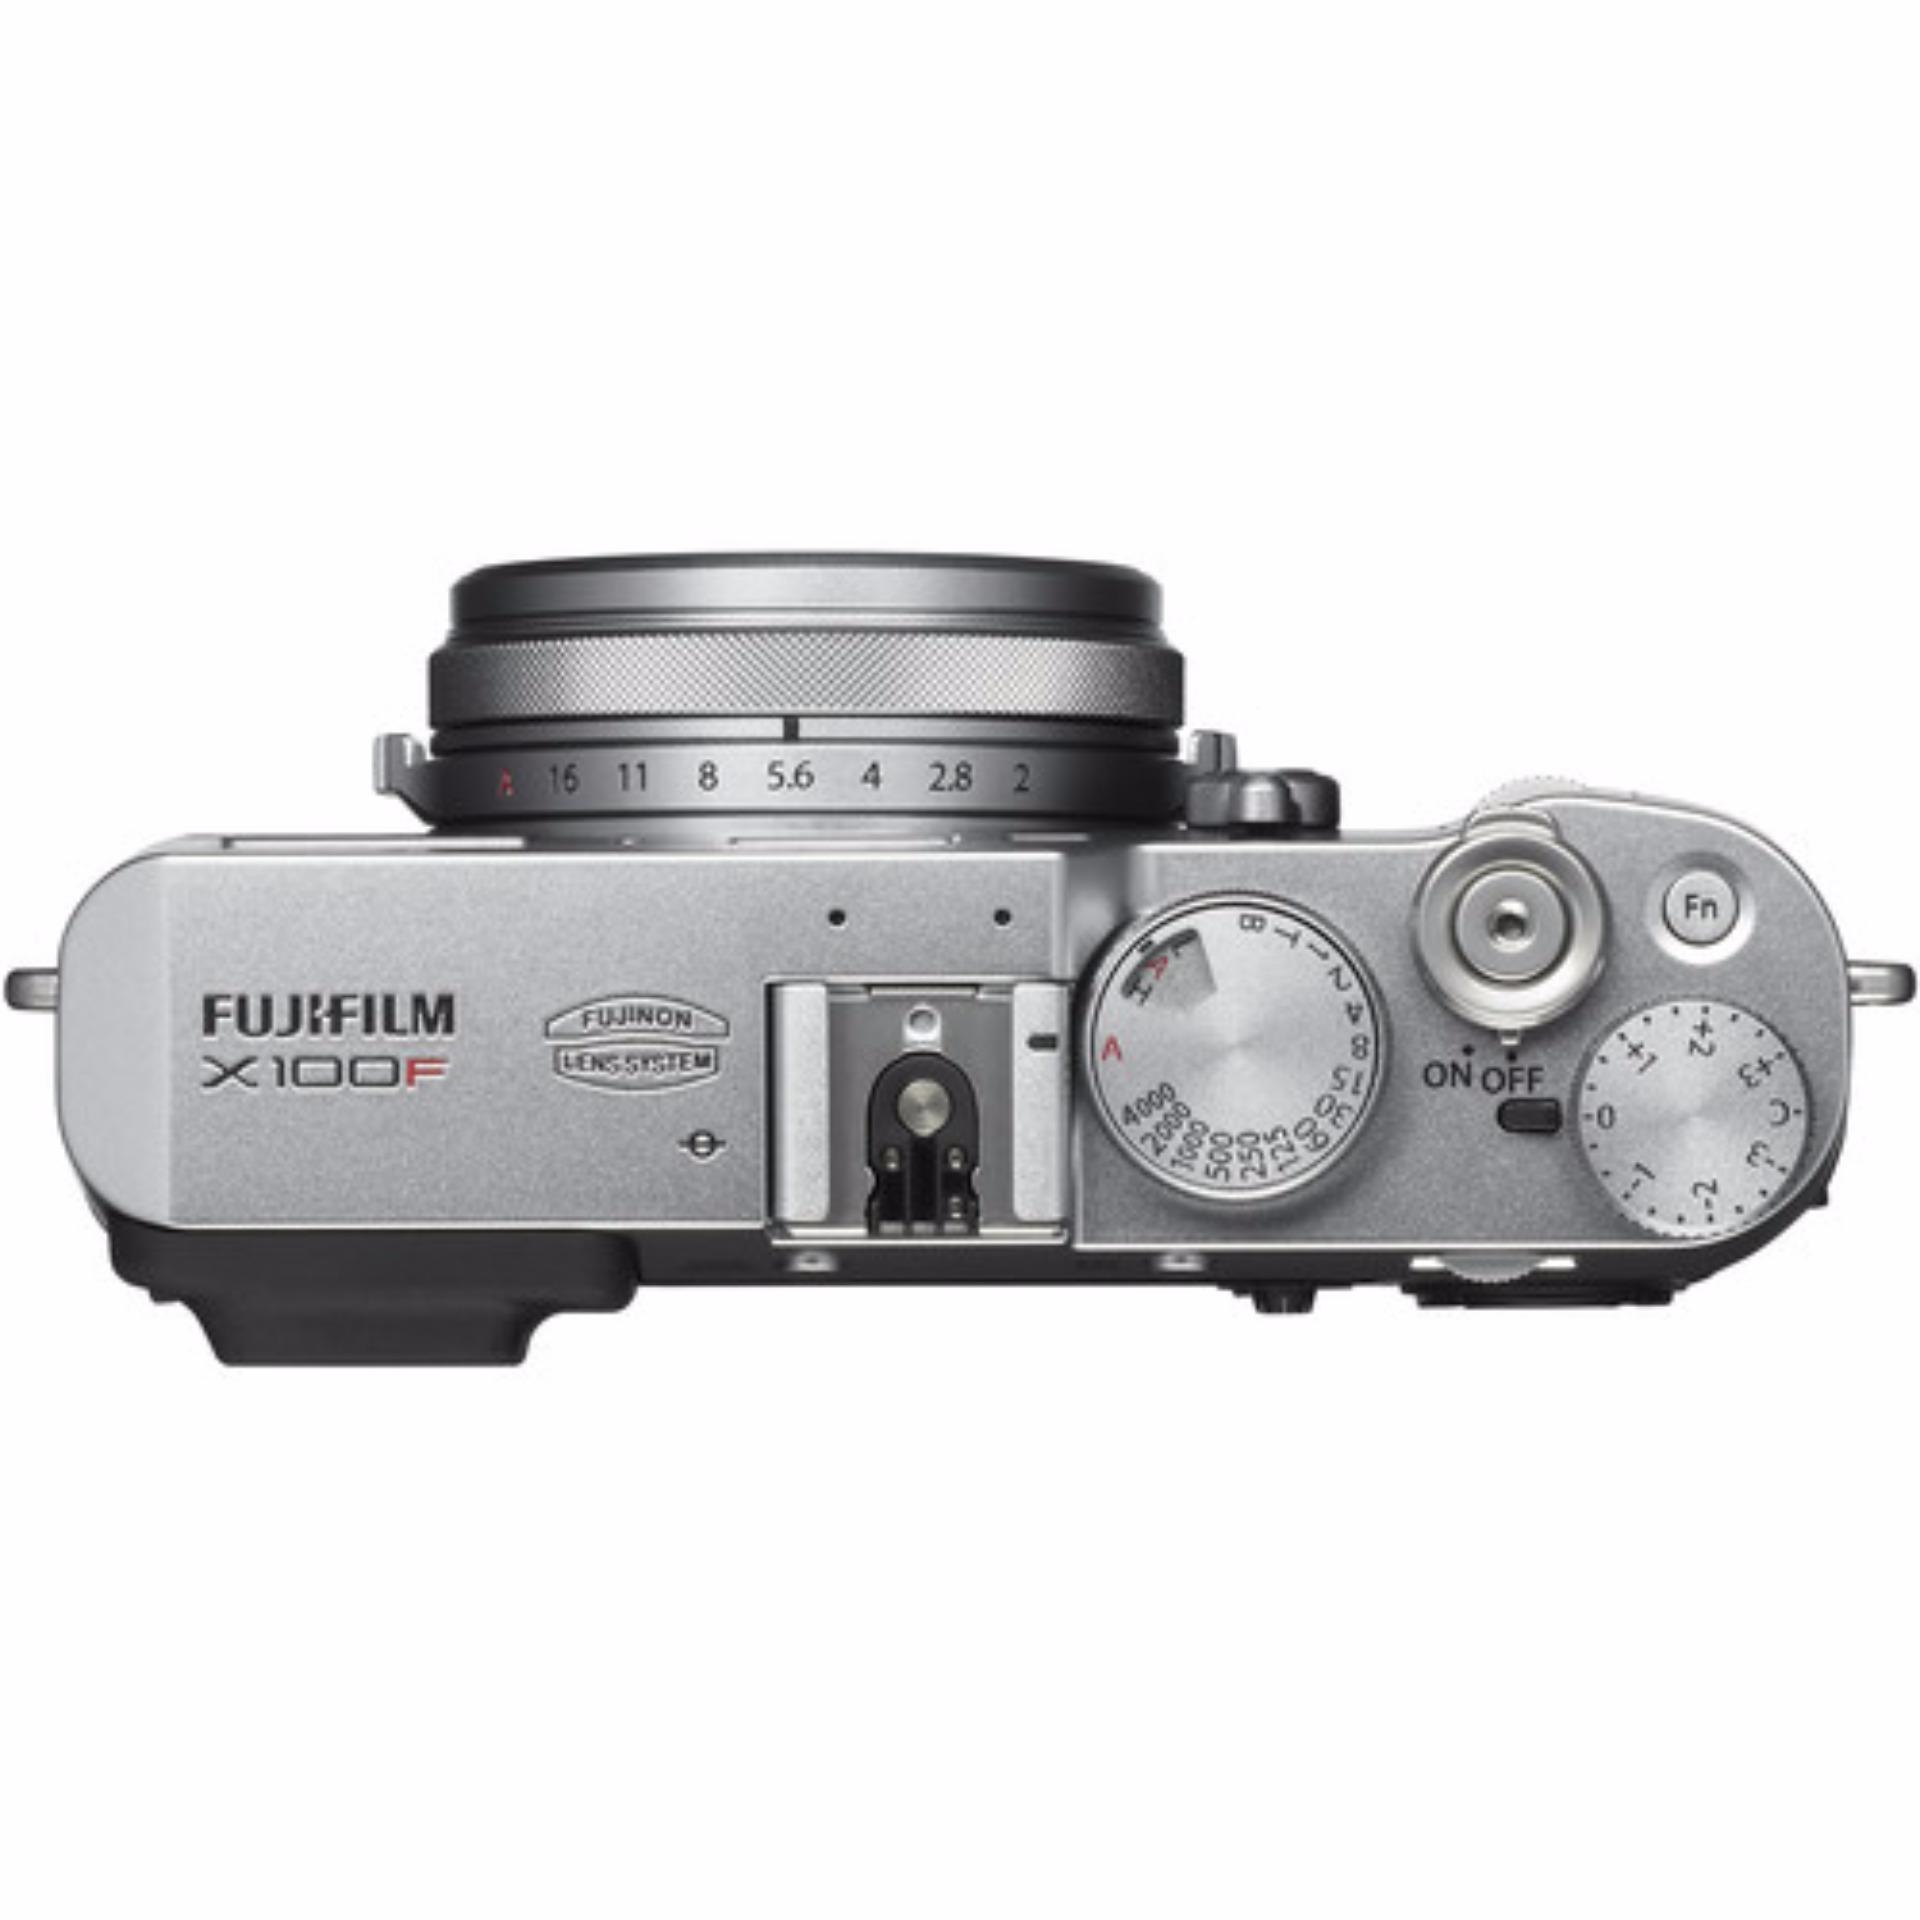 Fujifilm X100F Digital Camera (silver)